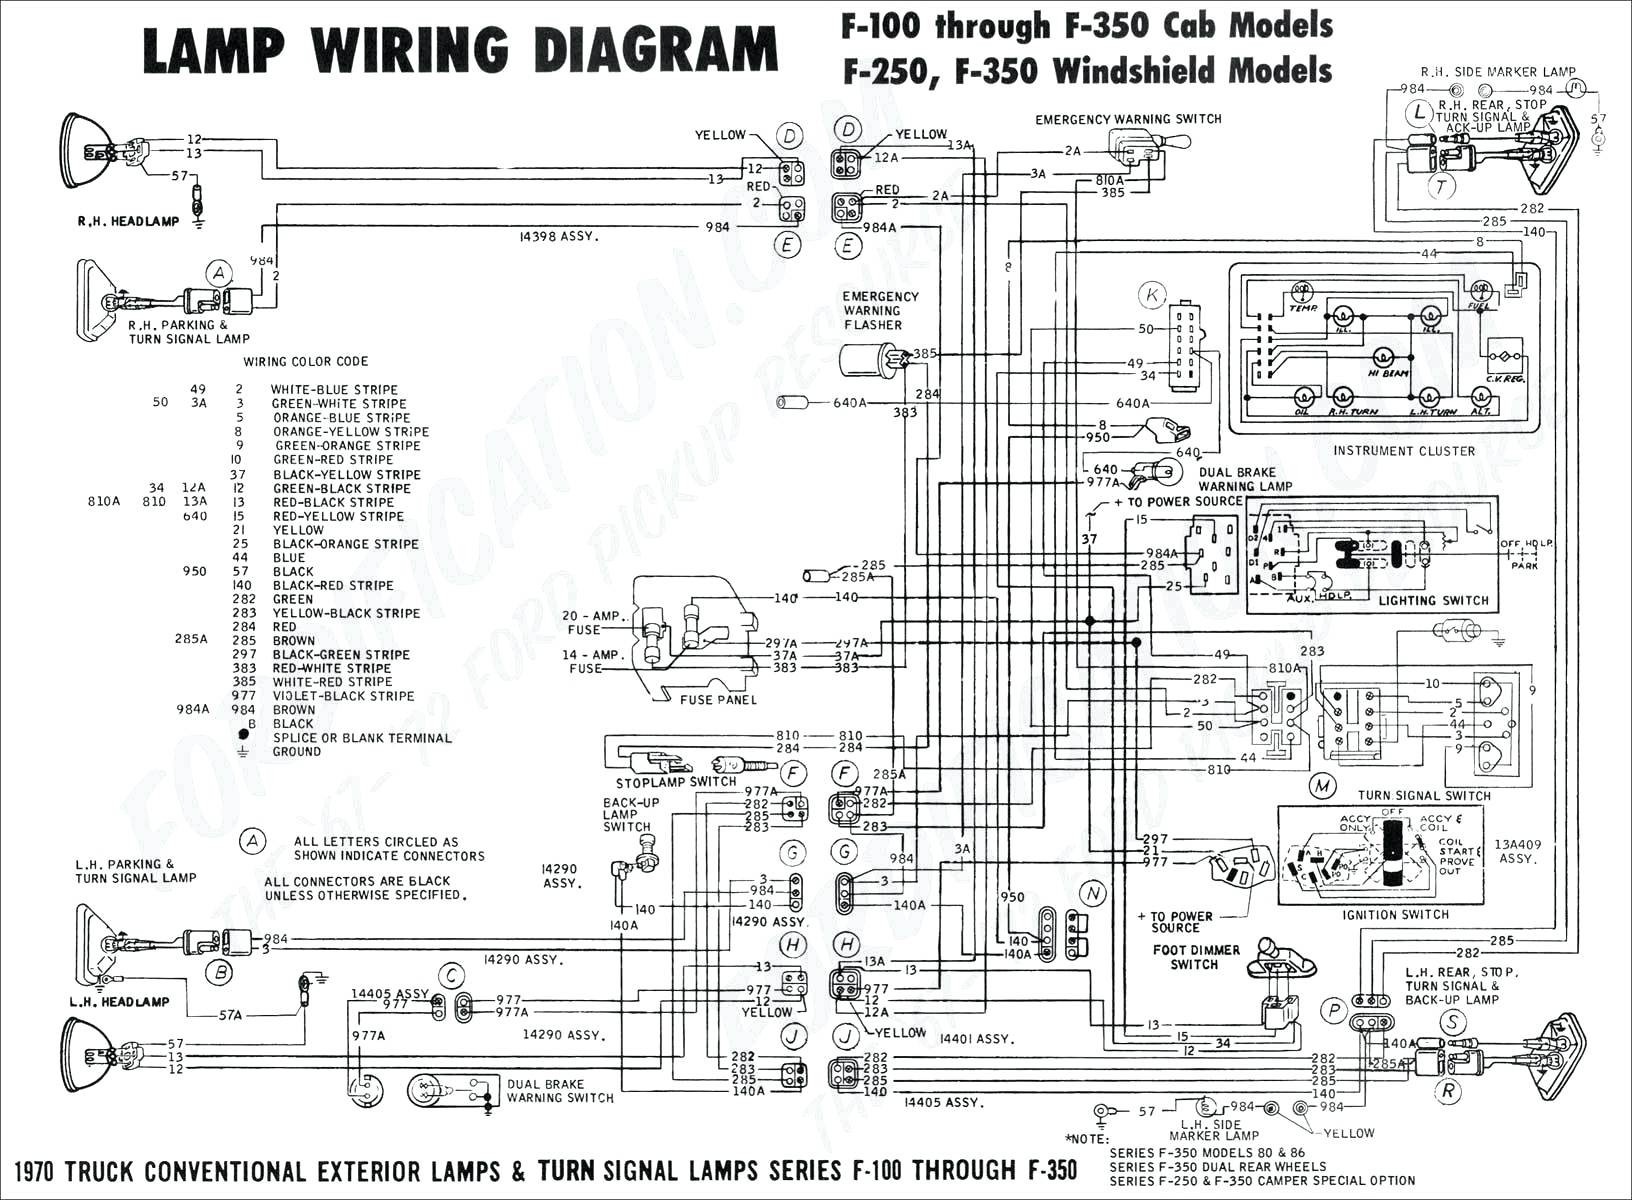 2001 Chevy Malibu Engine Diagram Wiring Diagram 2008 Tahoe Experts Wiring Diagram • Of 2001 Chevy Malibu Engine Diagram